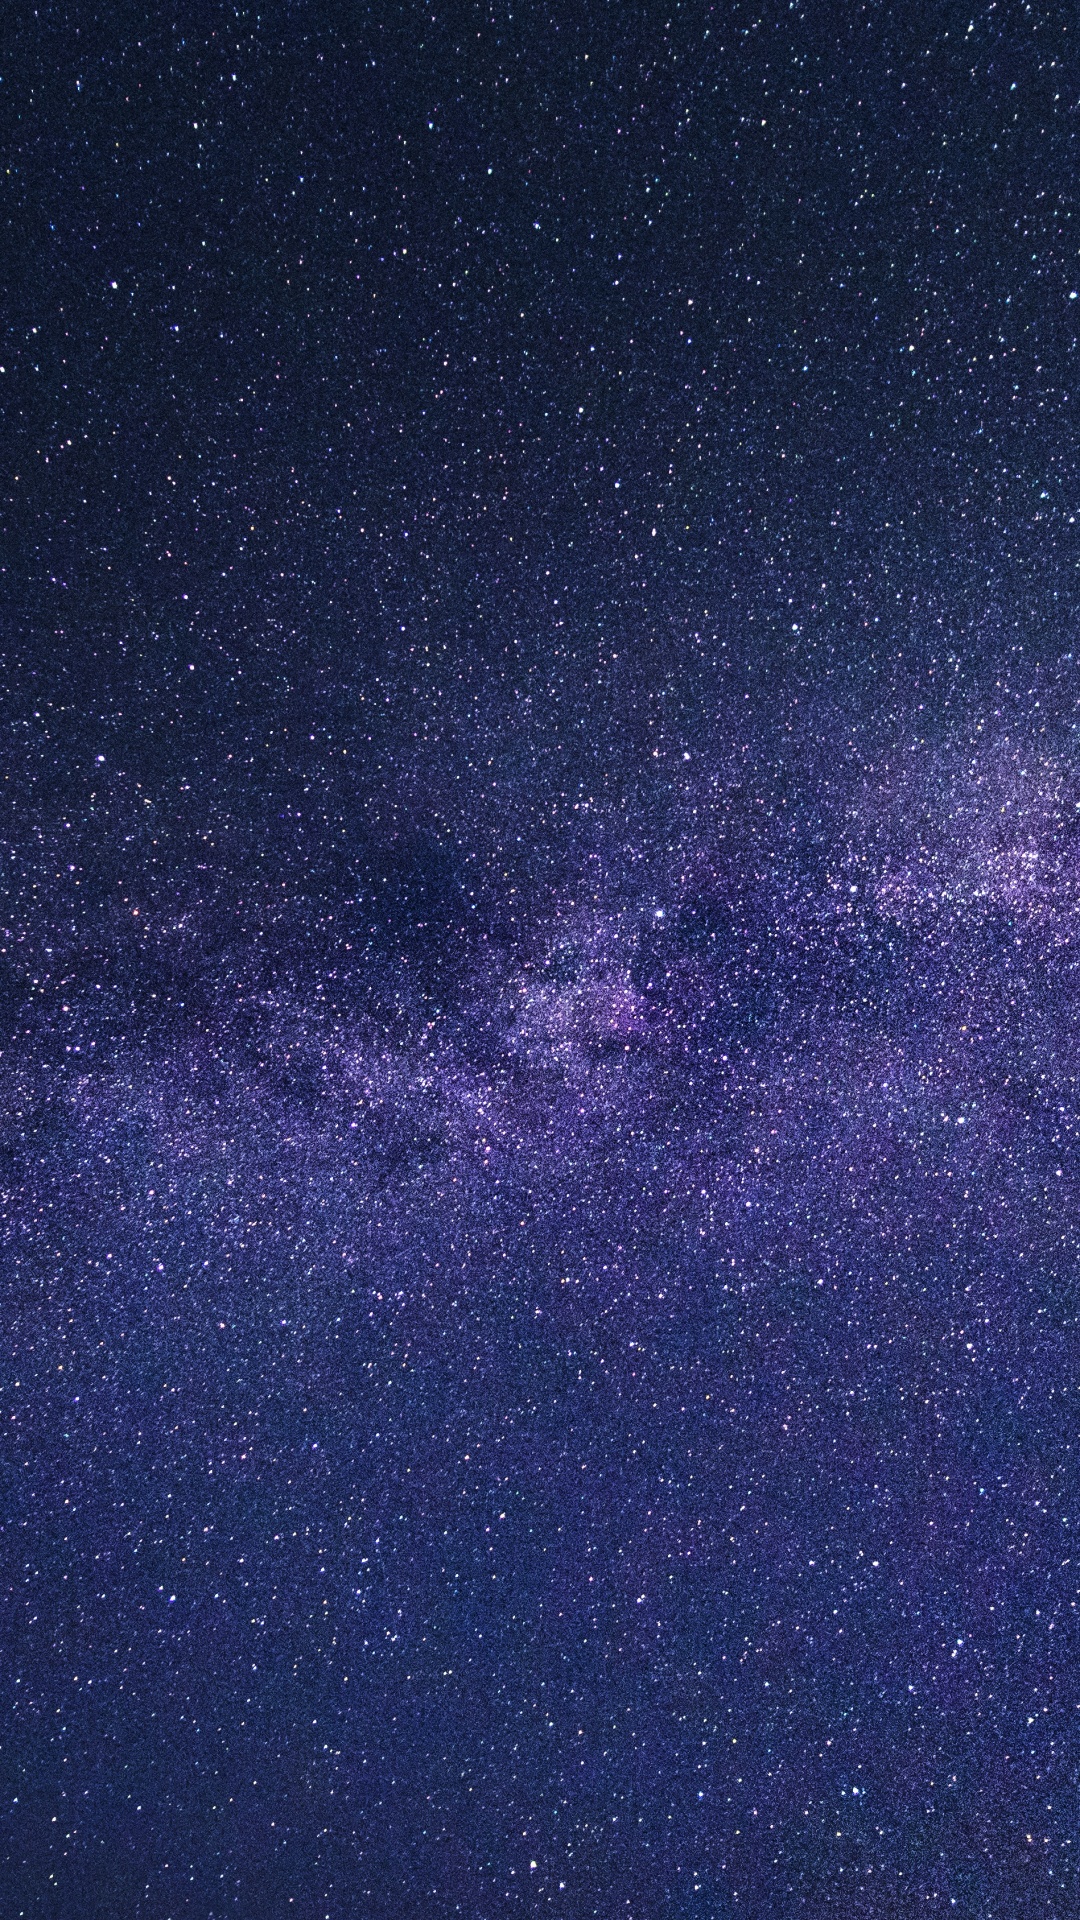 Ciel Étoilé Au-dessus de la Nuit Étoilée. Wallpaper in 1080x1920 Resolution